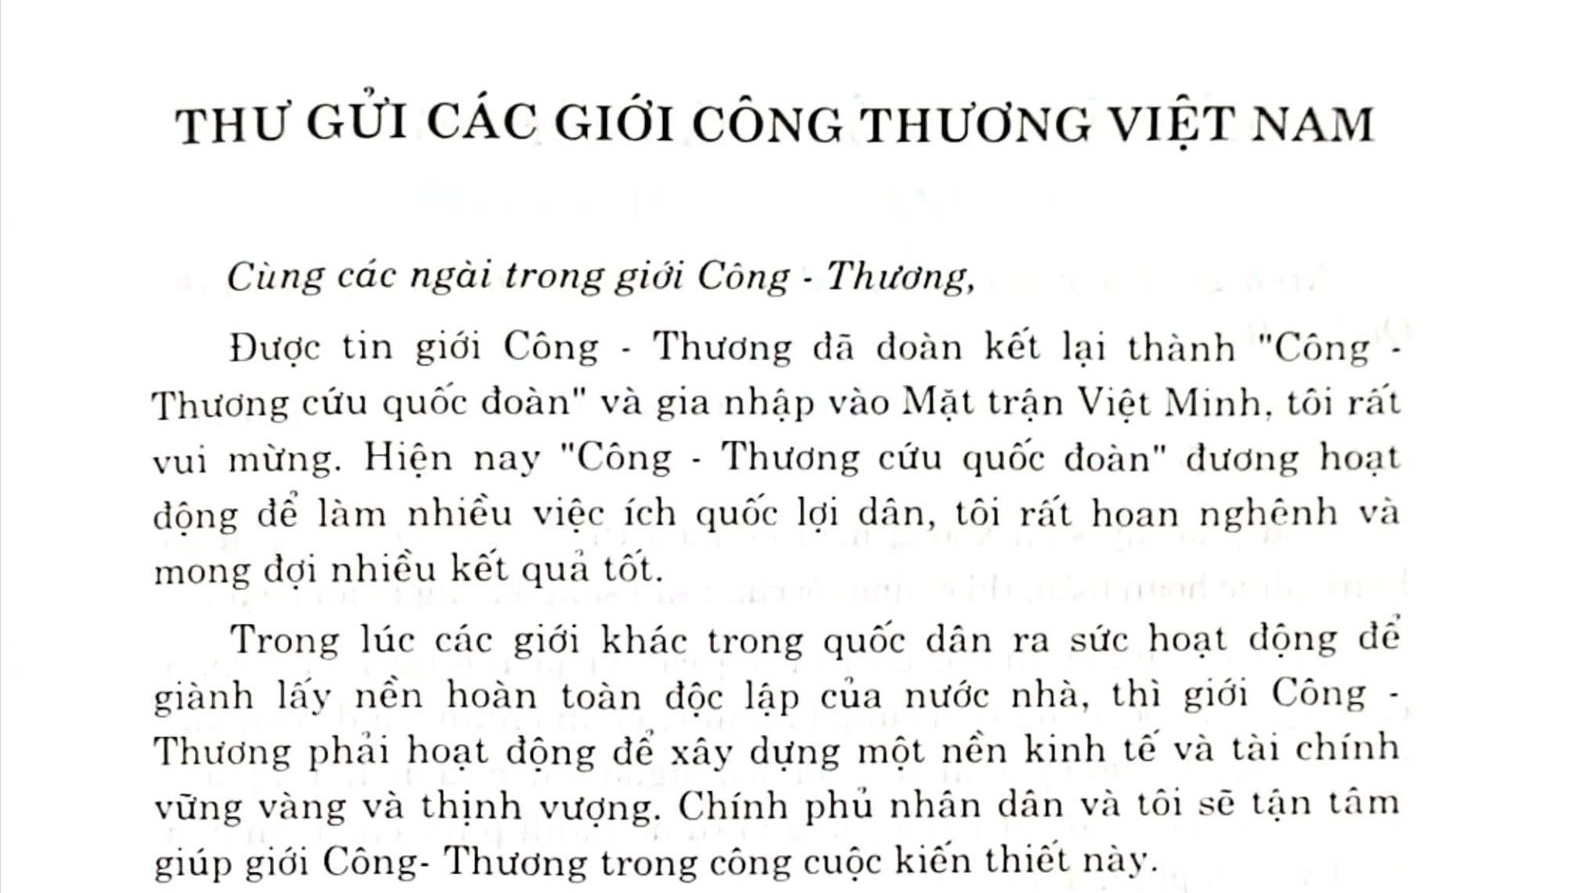 Từ bức thư của Chủ tịch Hồ Chí Minh gửi các giới công thương Việt Nam